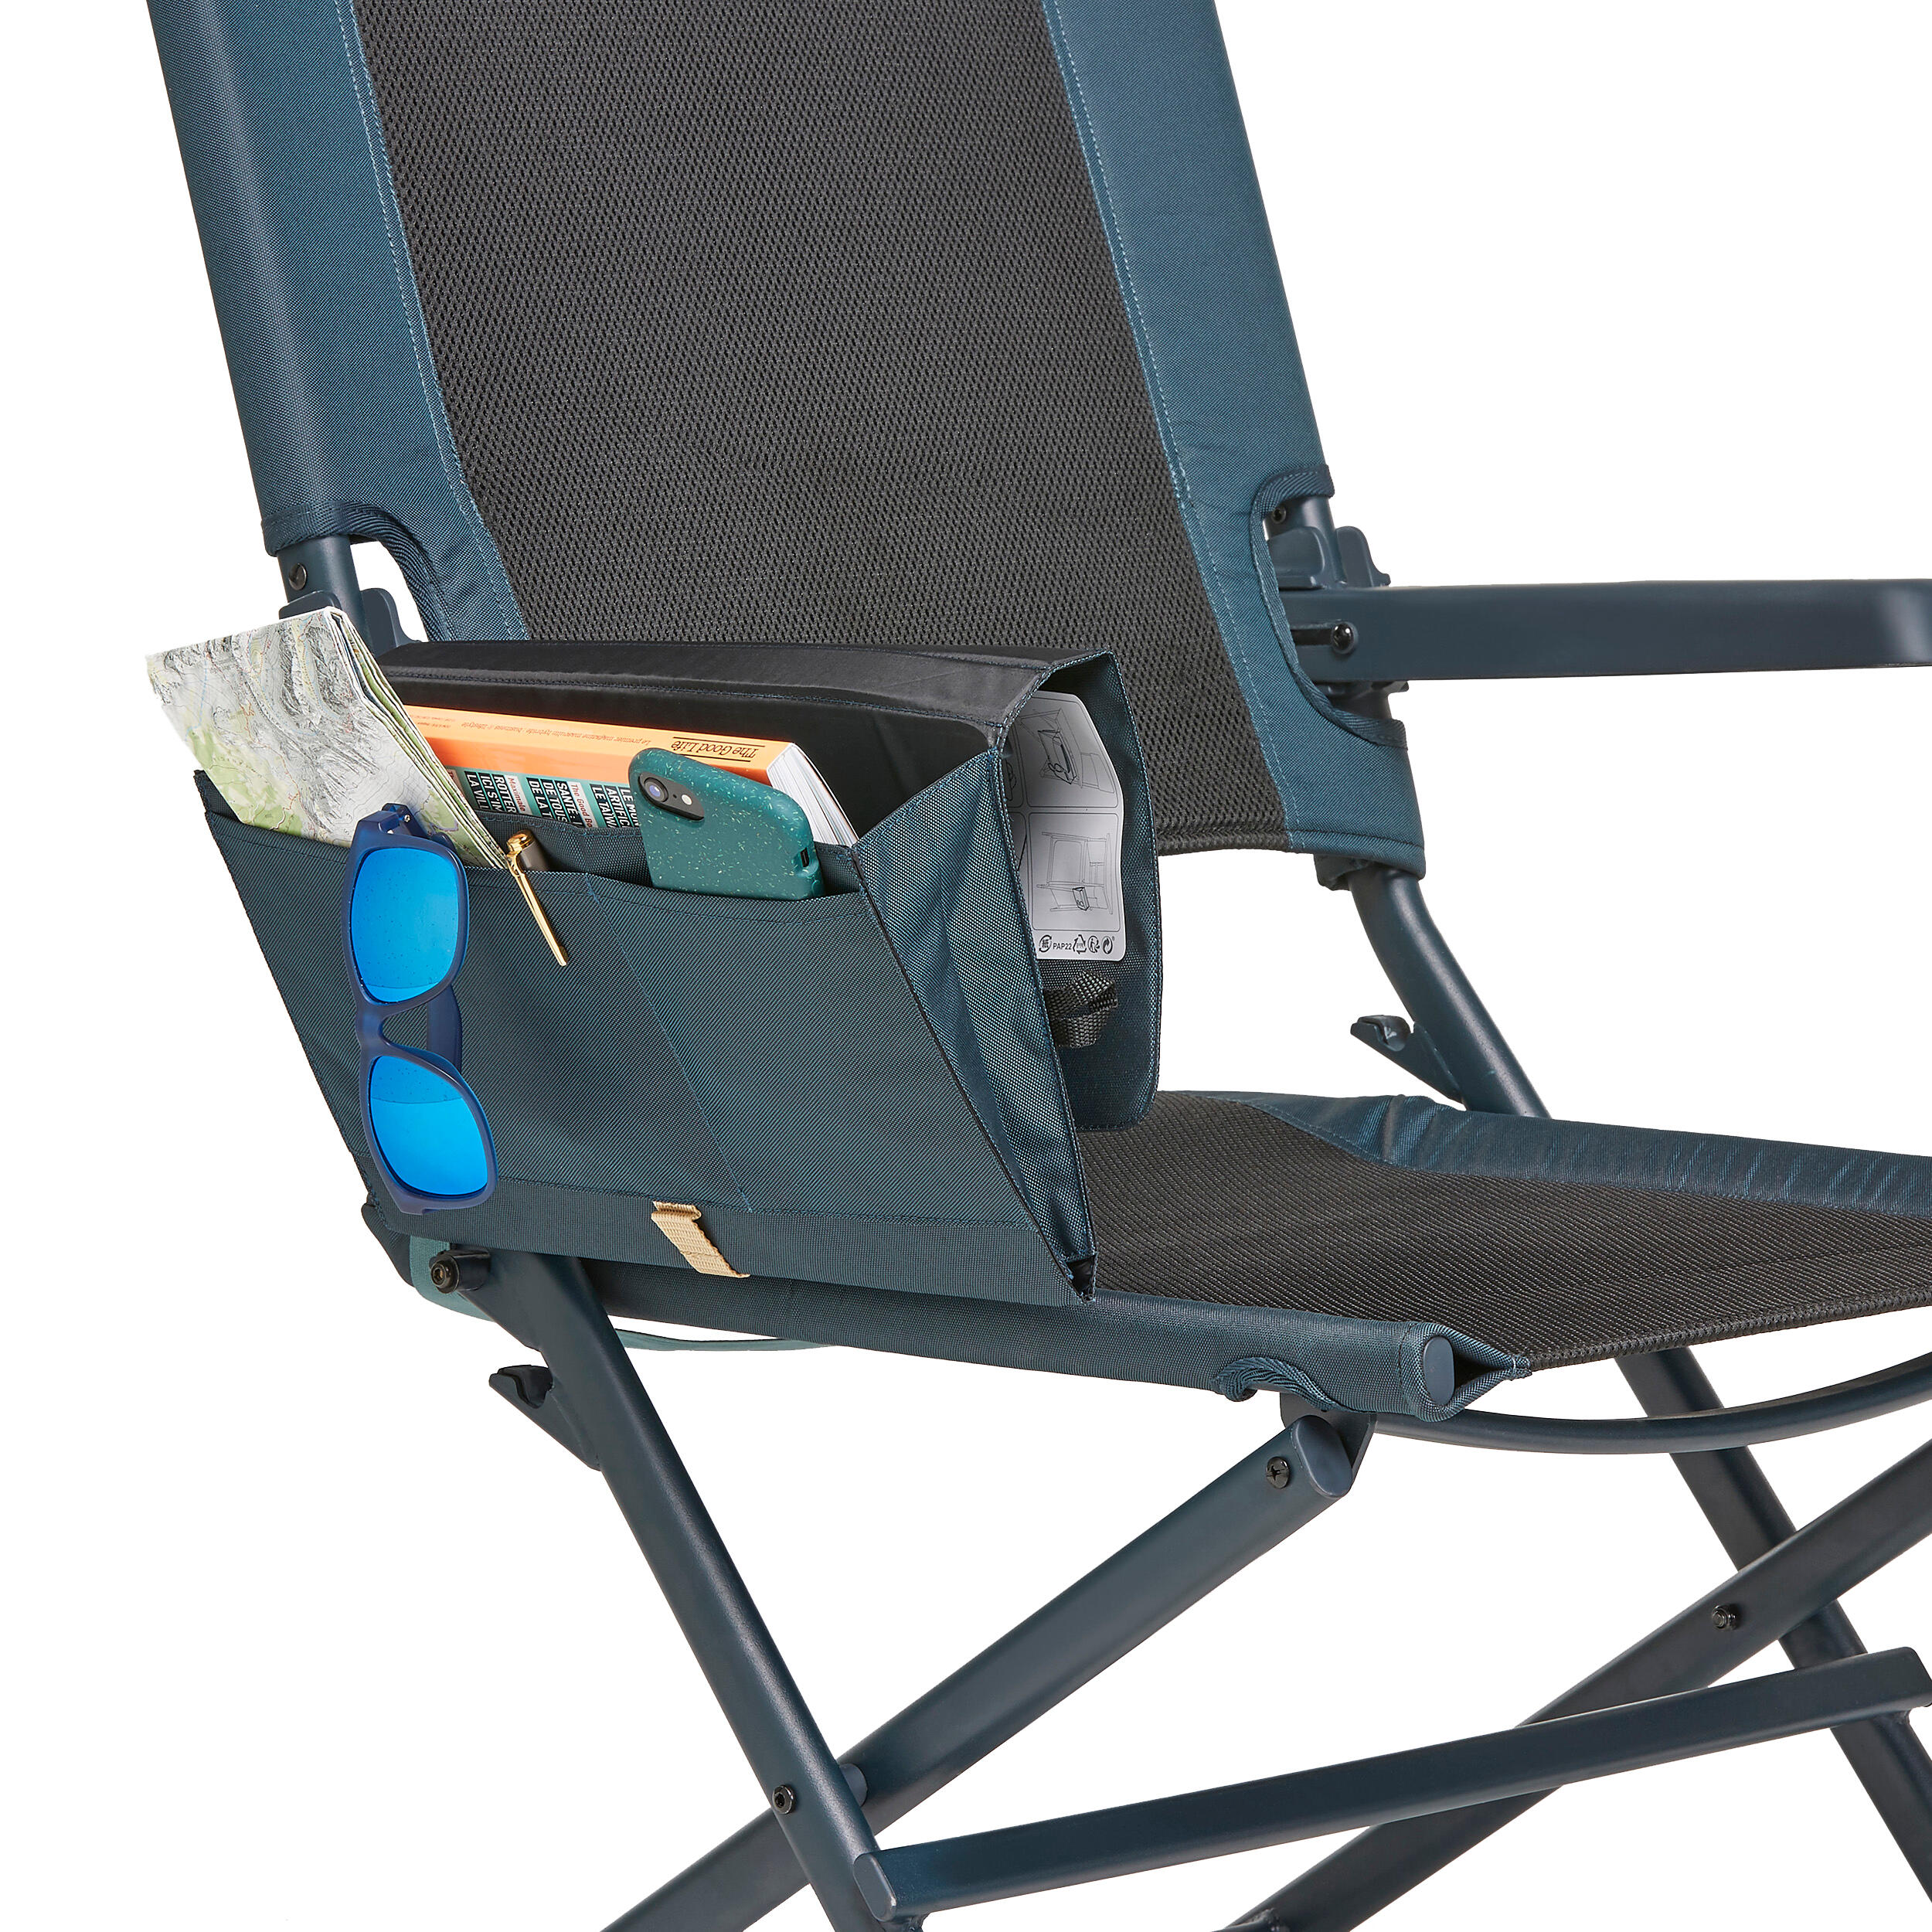 IBLUELOVER Chaise Pliante de Jardin Portable Chaise de Camping Hauteur Réglable Chaise de Travail Pliable Chaise Exterieur Intérieur Party pour Pique-Nique BBQ 